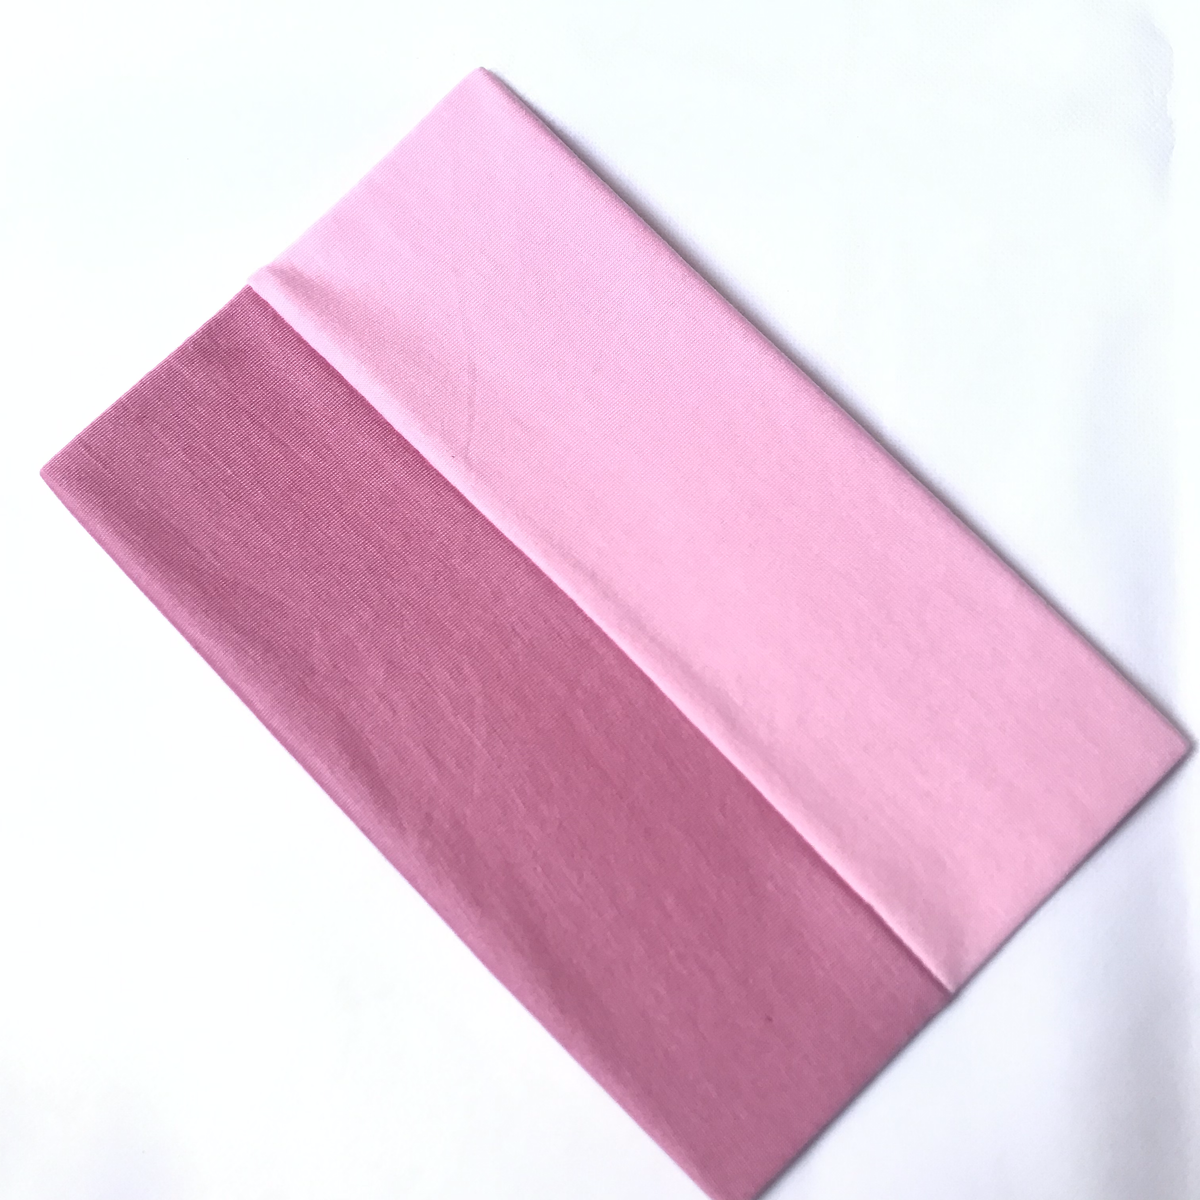 Hijab Cap – Pink and Light Pink